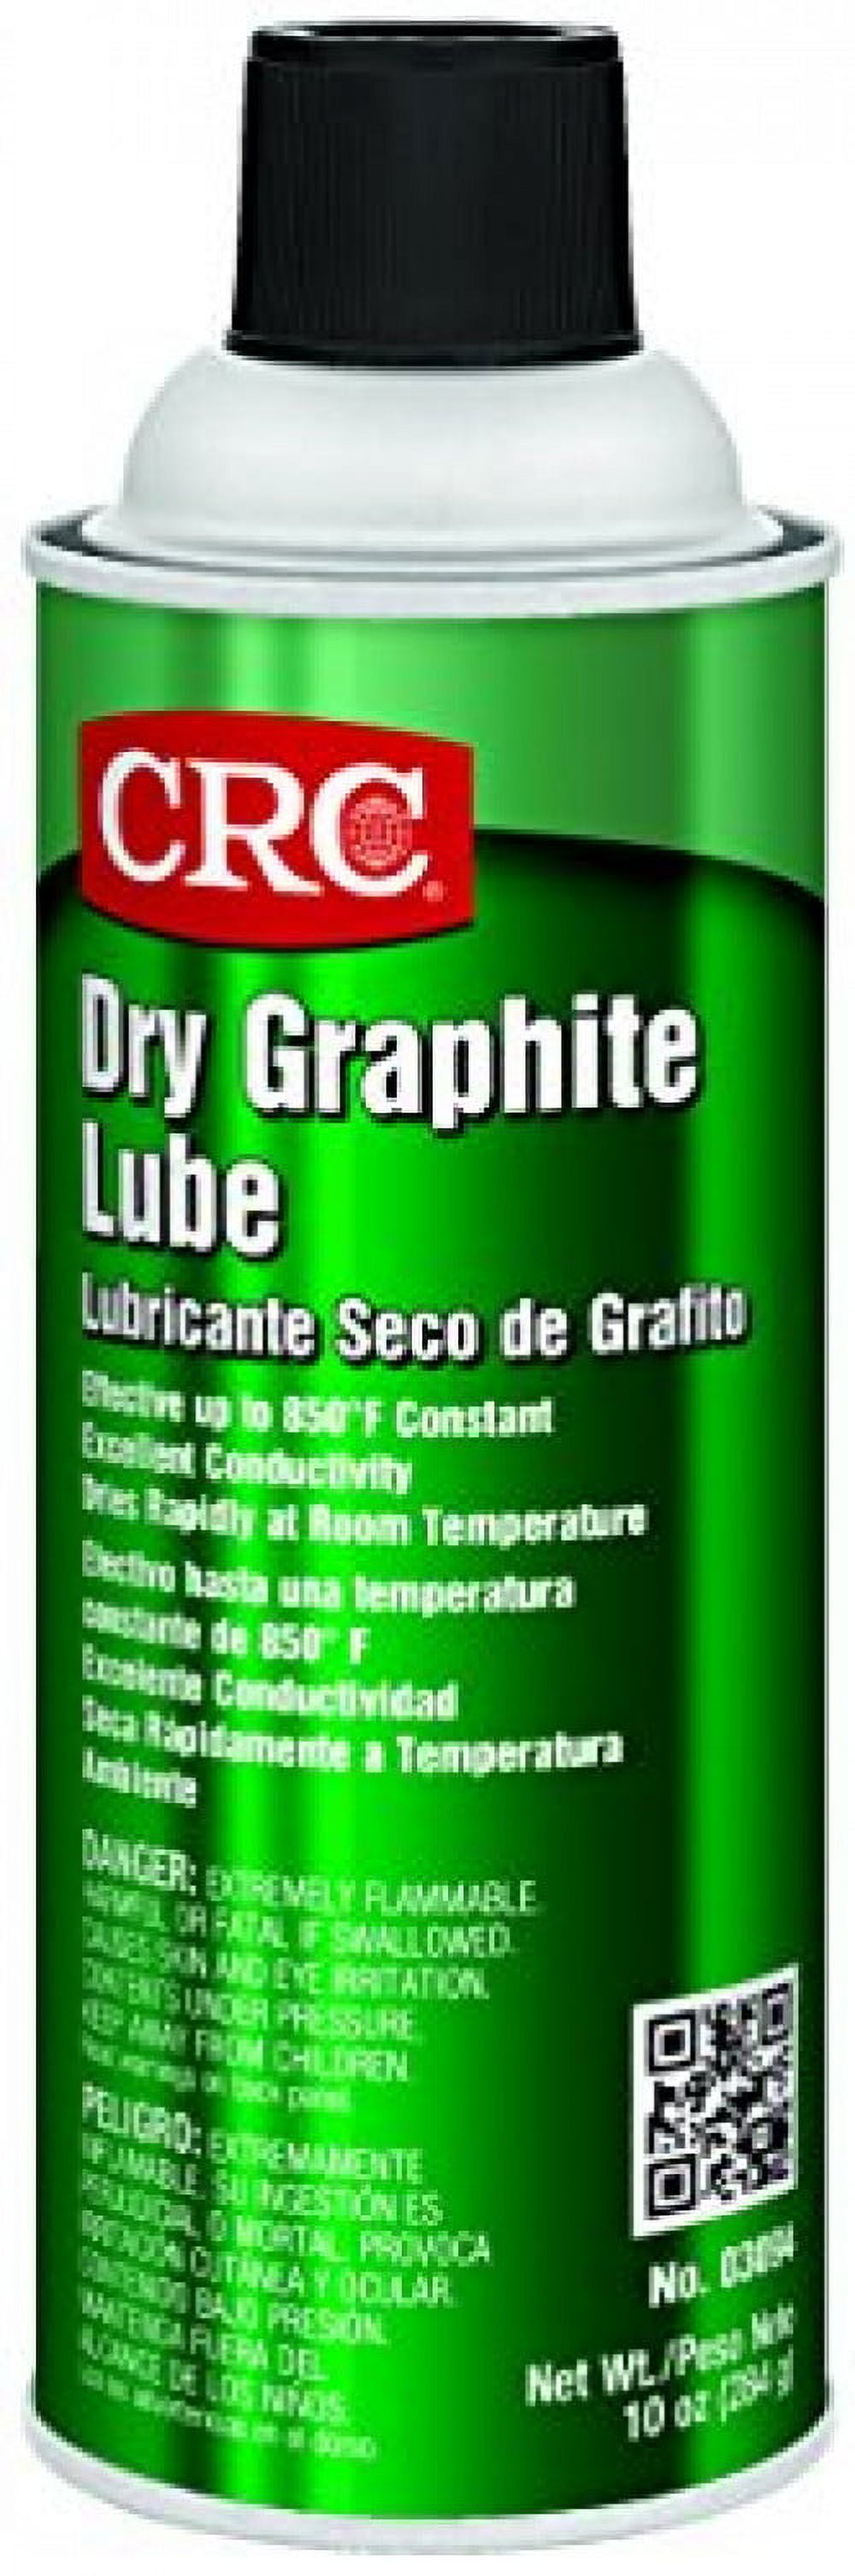 Seymour Dry Graphite Lube, Tool Crib, 20 oz. Aerosol Can